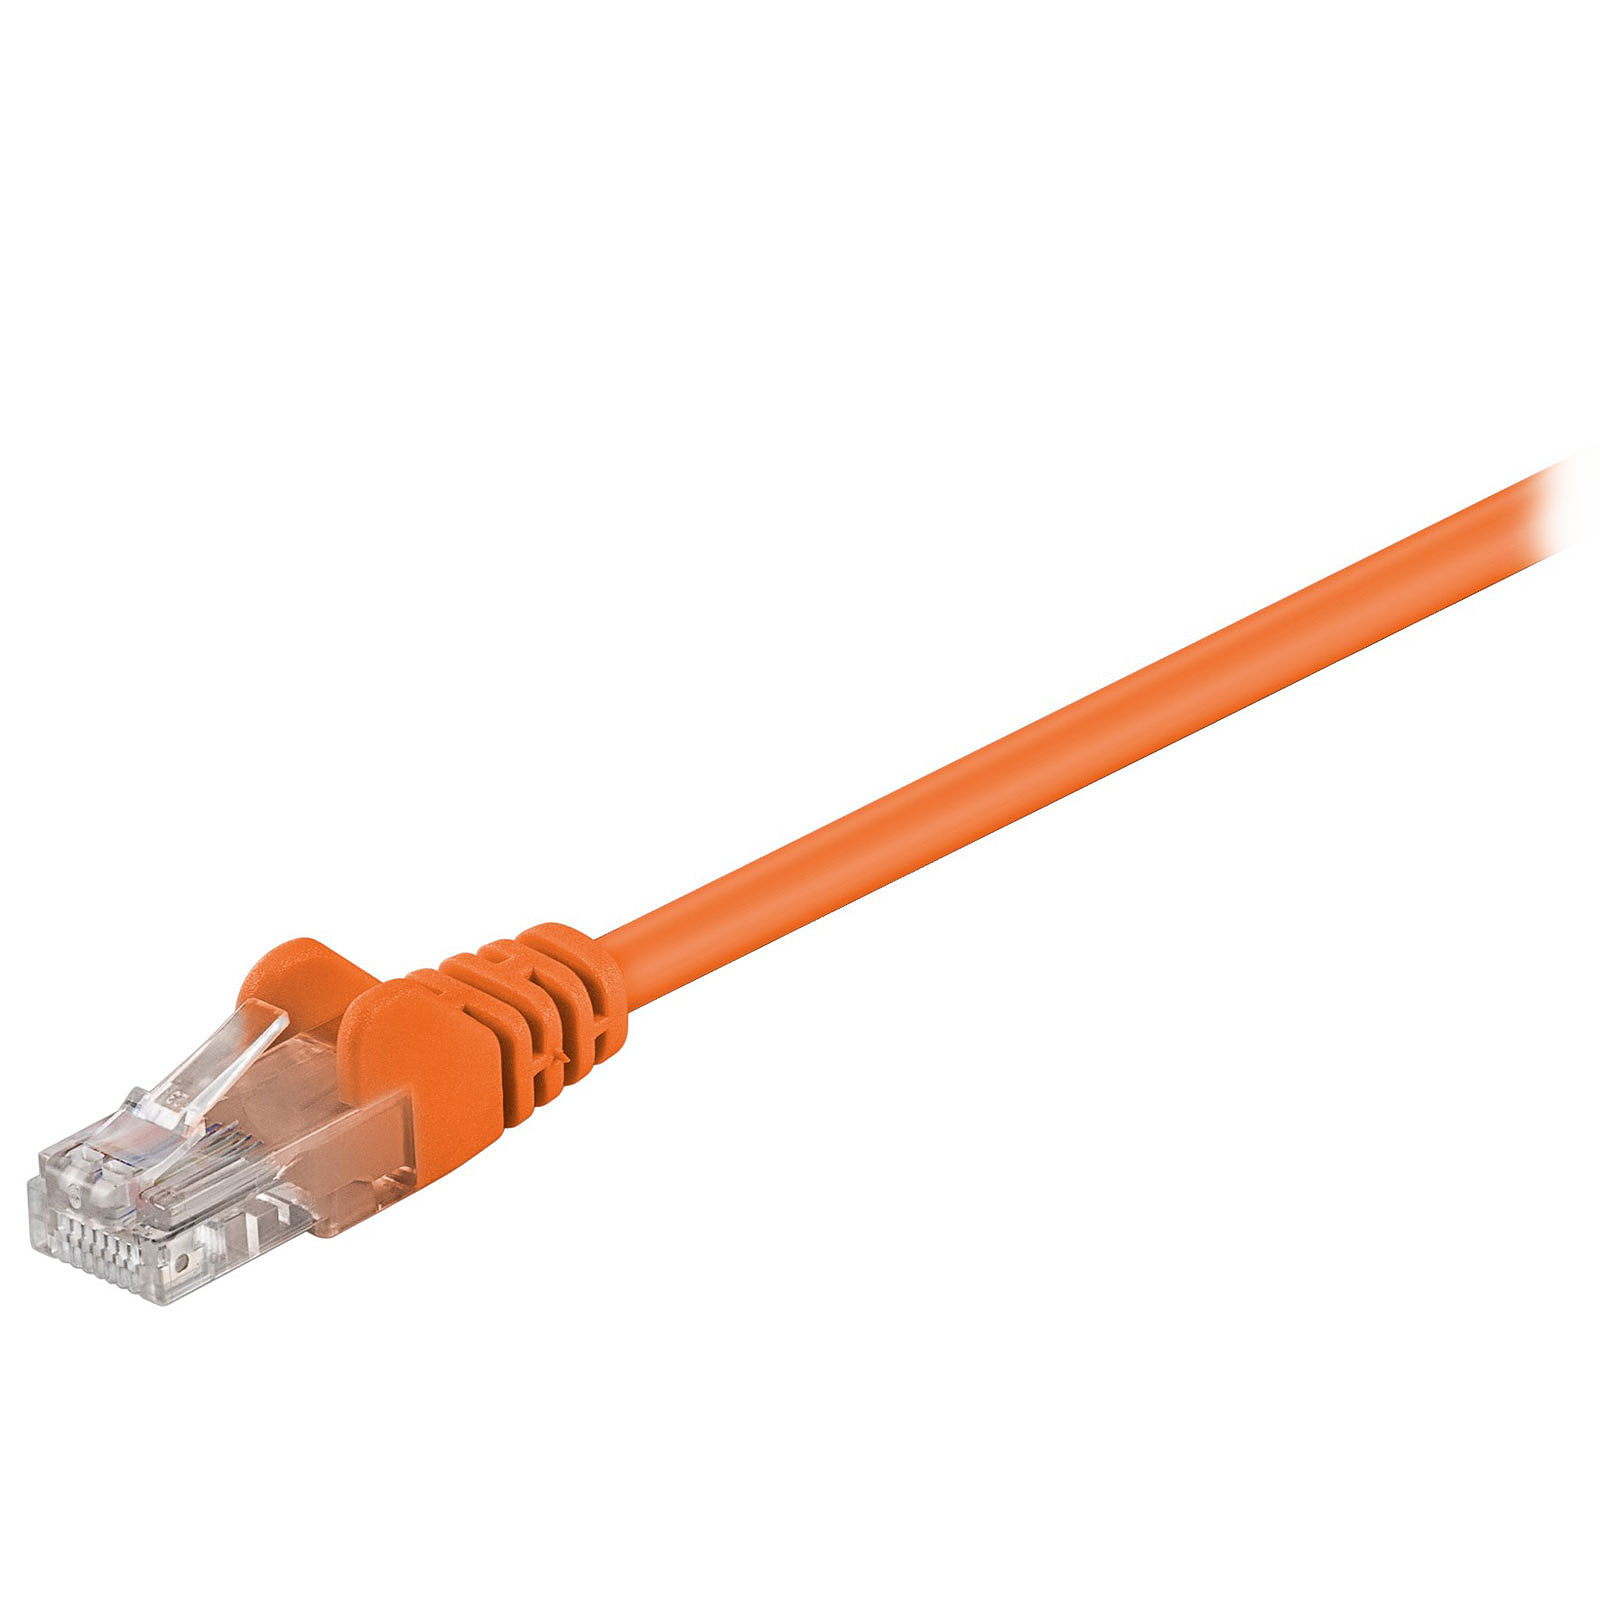 Cable RJ45 categorie 5e U/UTP 0.5 m (Orange) - Cable RJ45 Generique